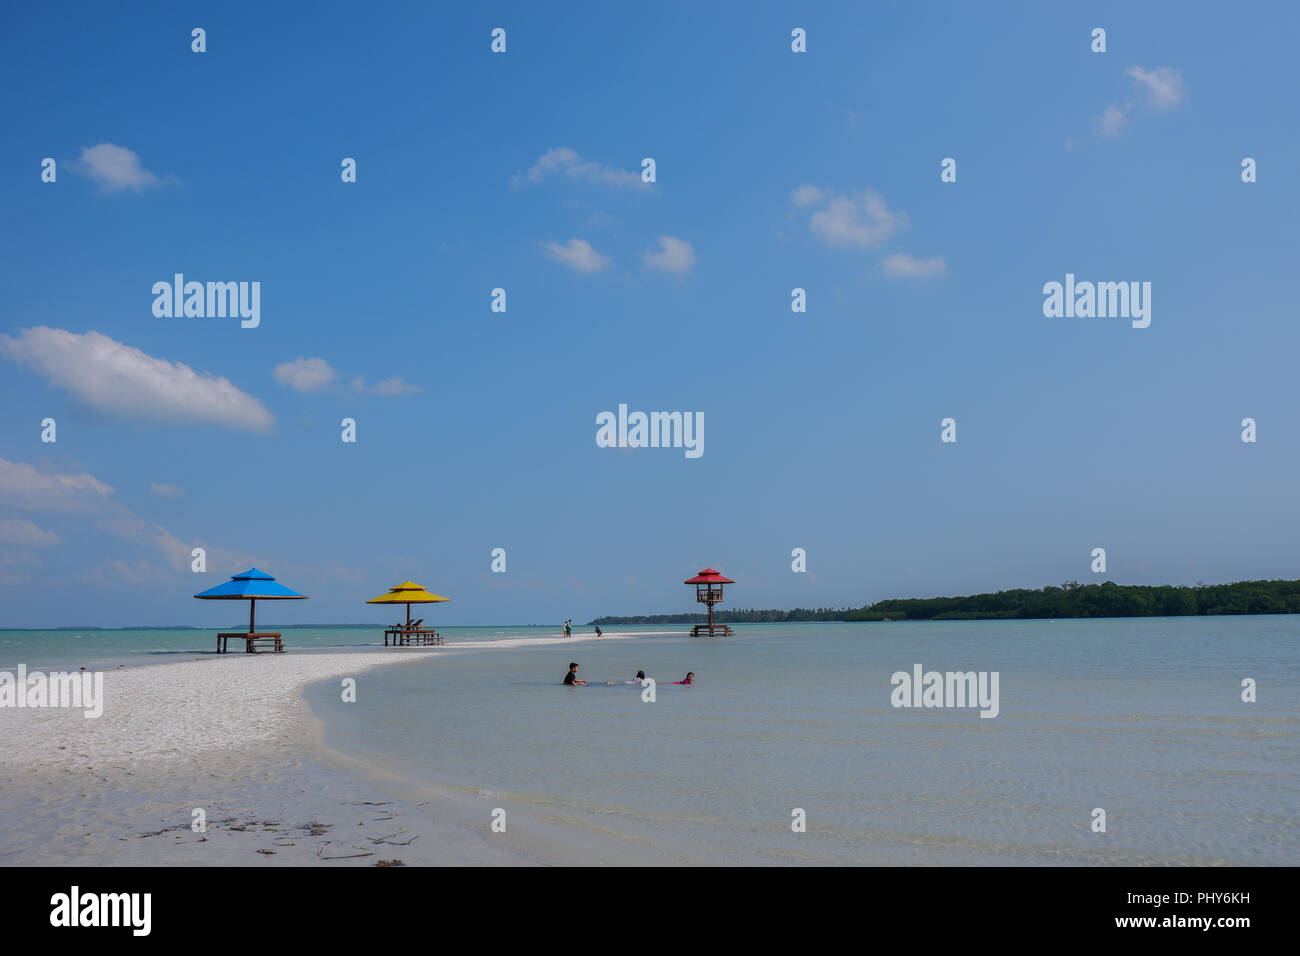 Belle plage de sable blanc sous ciel bleu à l'île de Belitung, Indonésie. Belle plage avec des vagues calmes, parfaite pour les destinations de voyage Banque D'Images